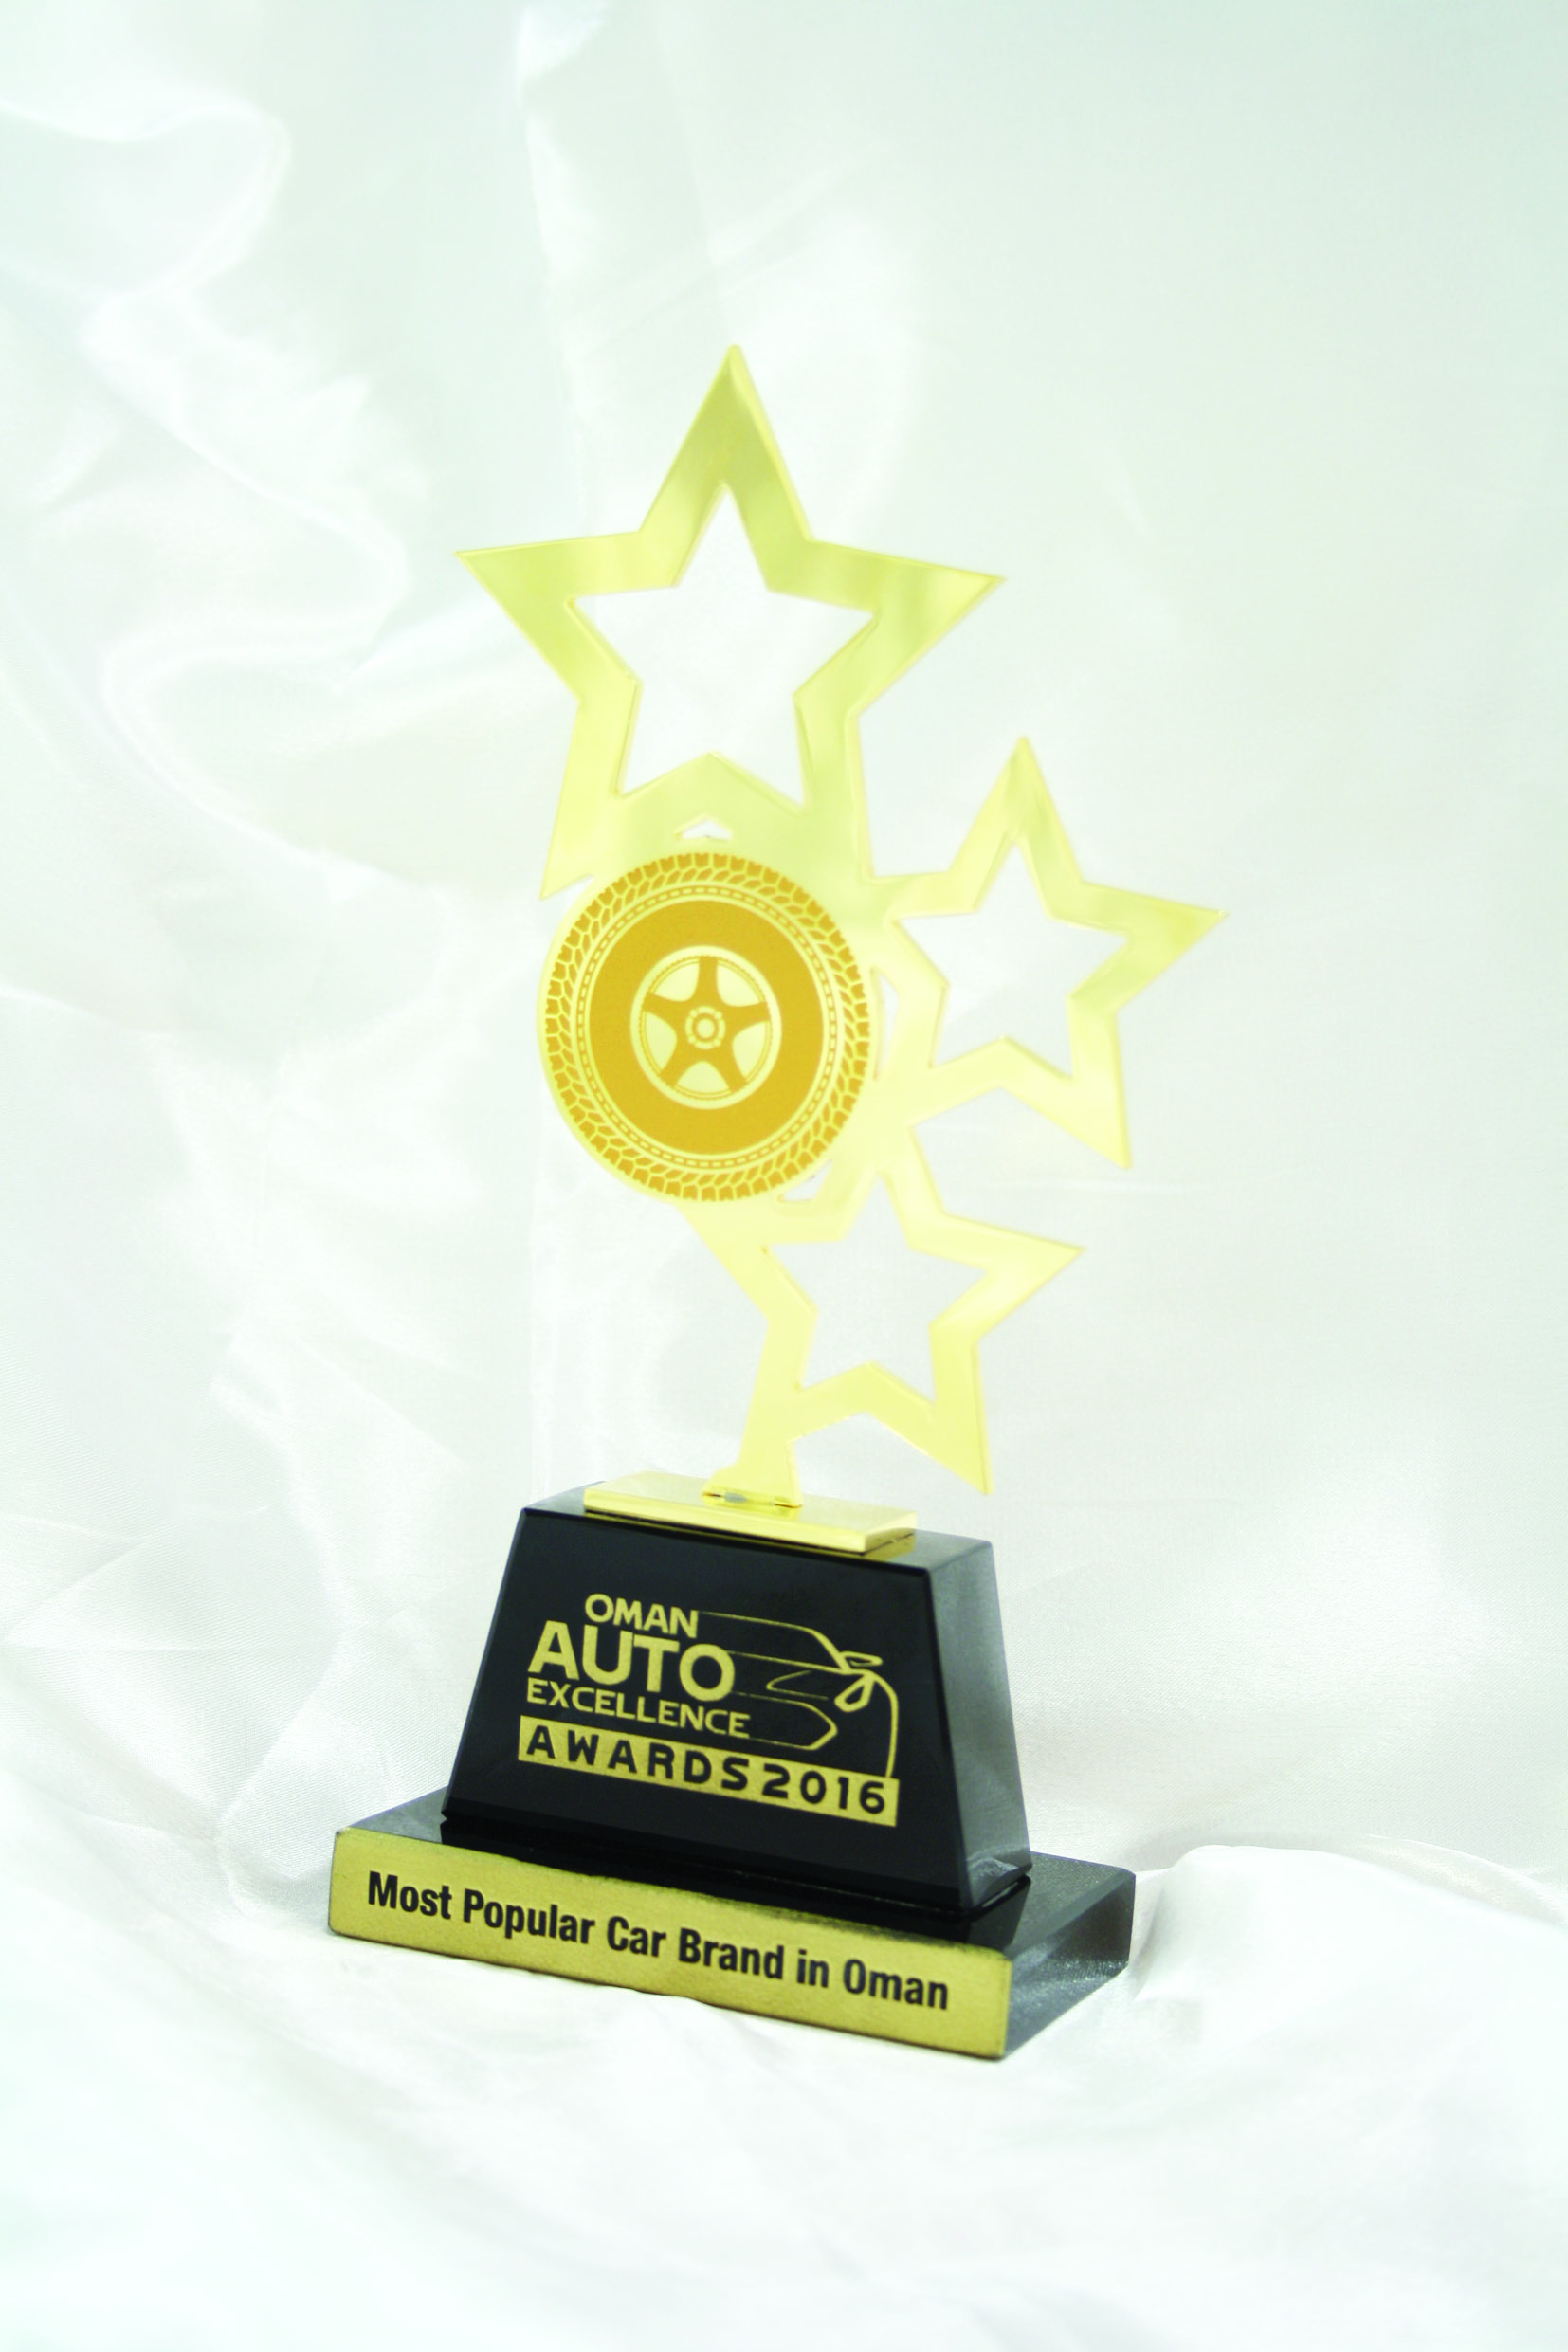 نيسان تفوز بجائزة العلامة التجارية للسيارات الأكثر شعبية في السلطنة